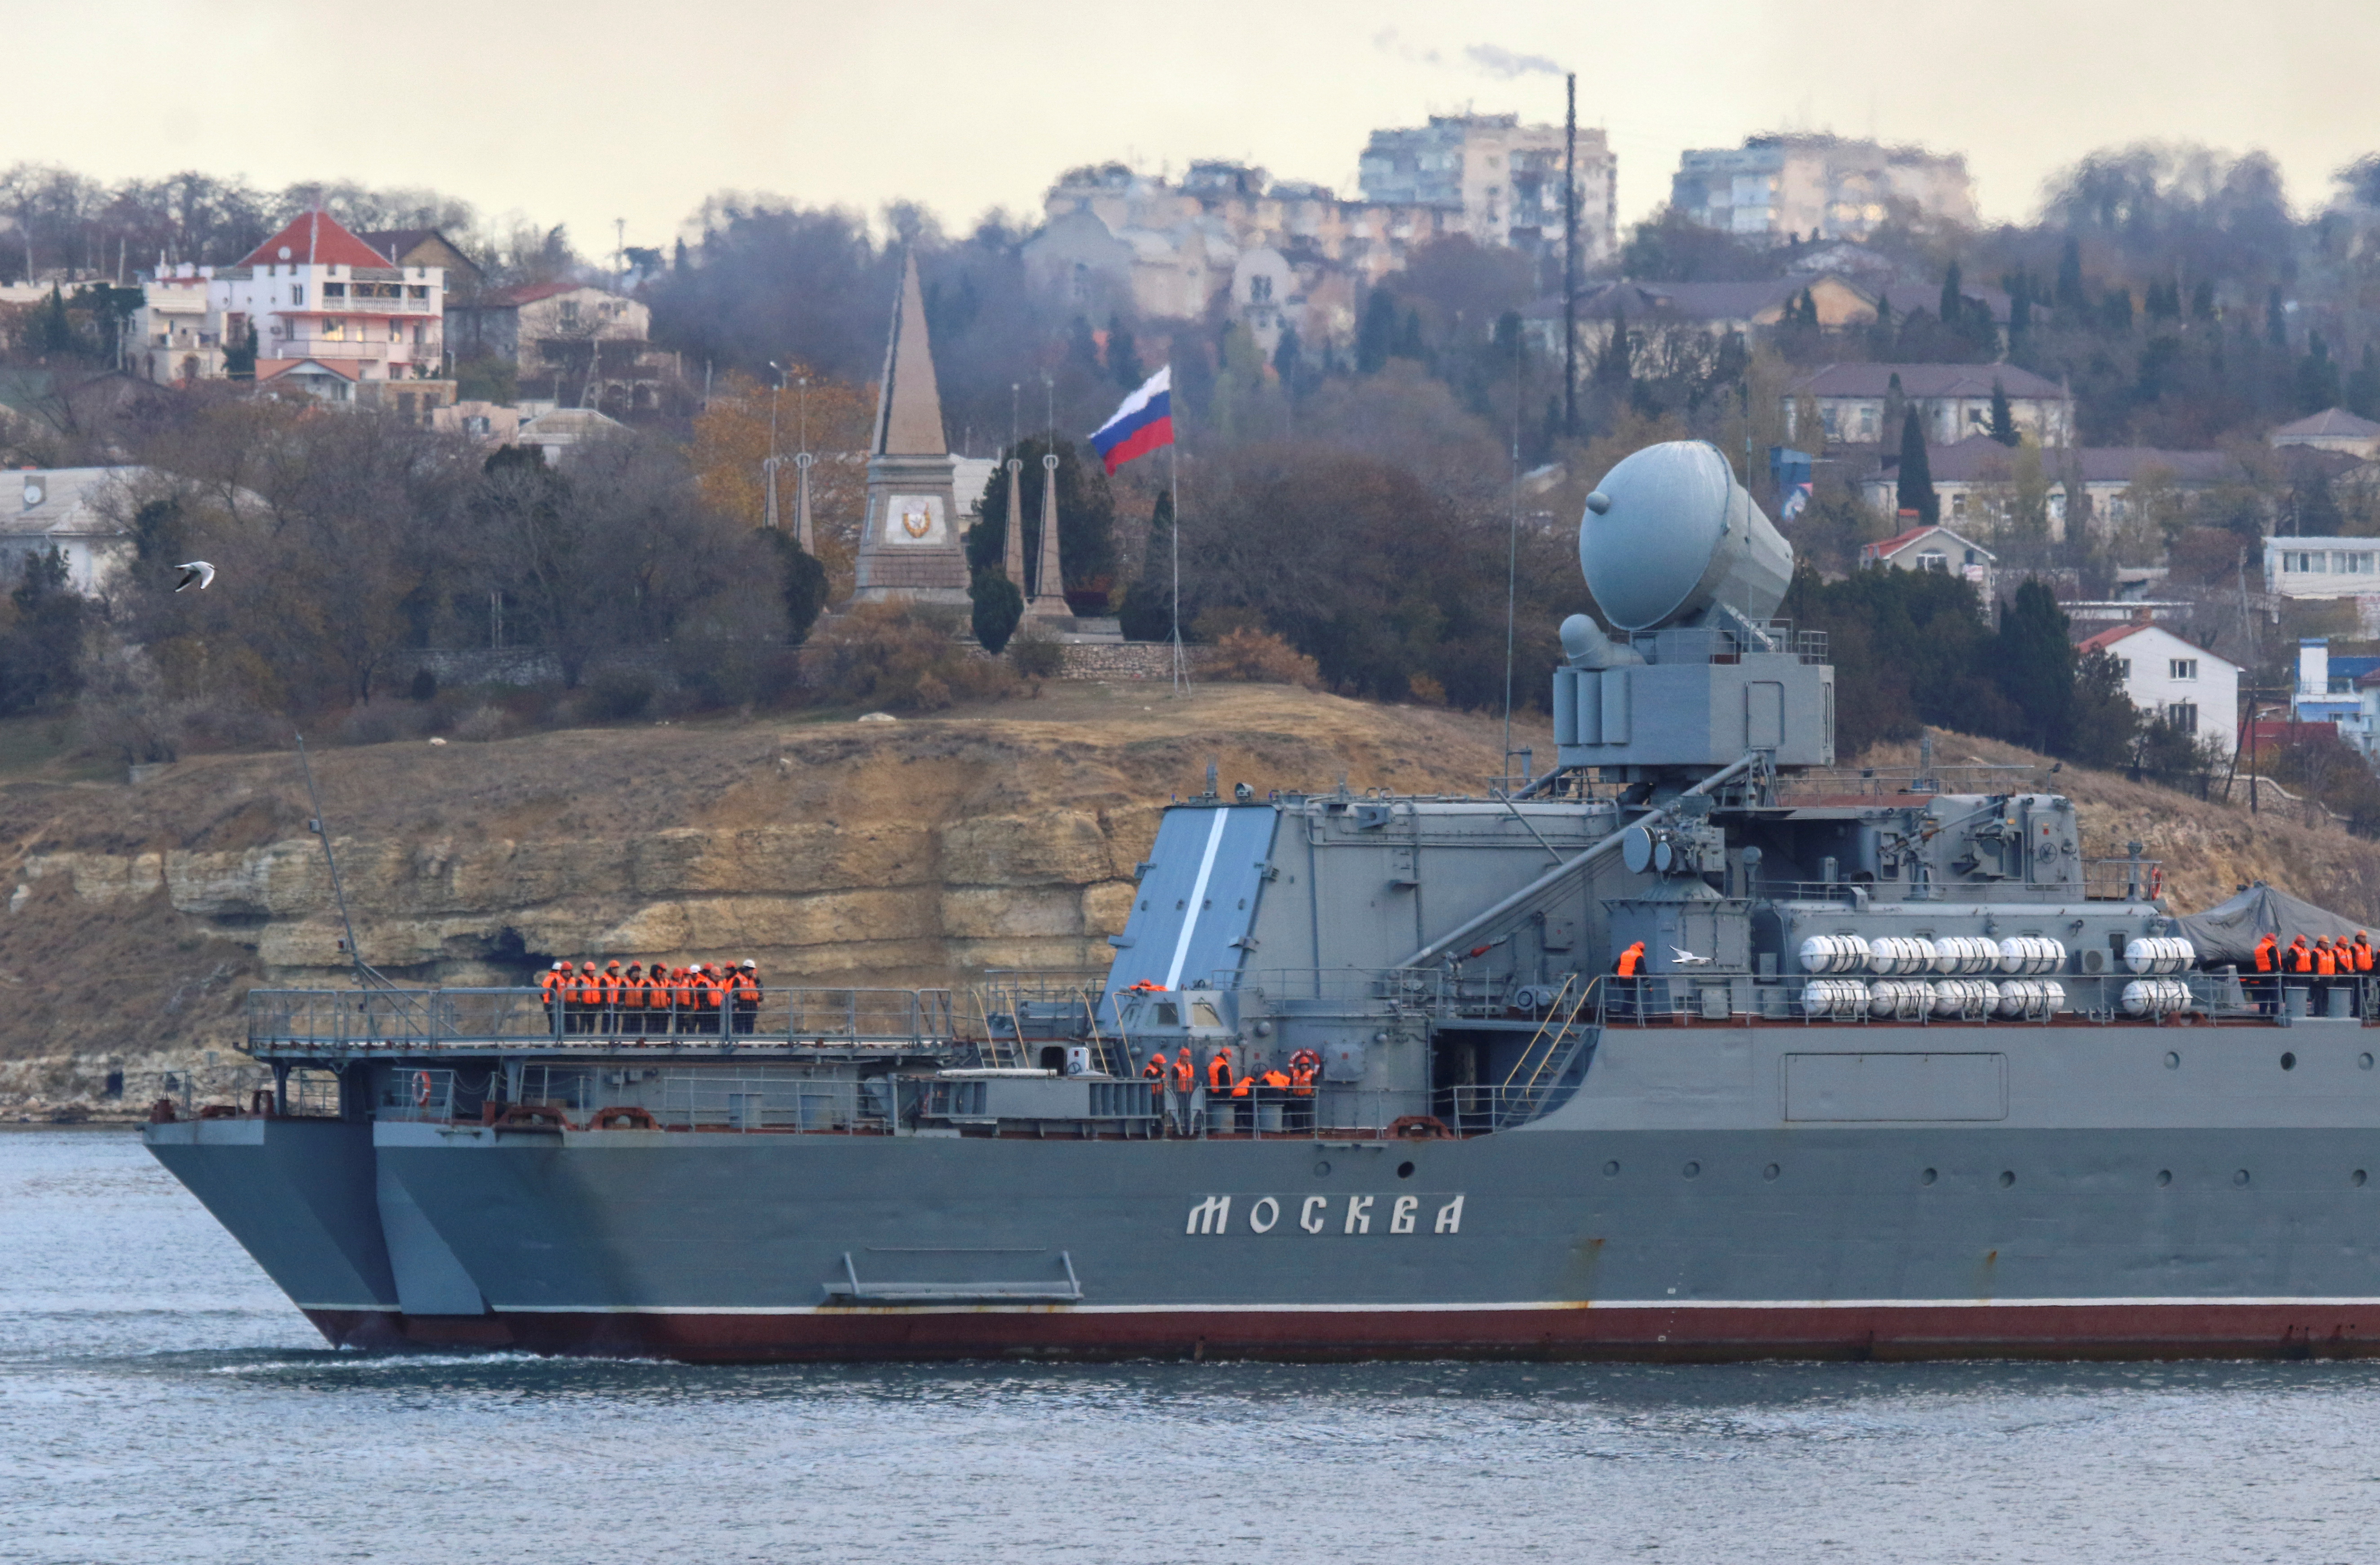 El crucero de misiles guiados Moskva (Moscú) navega de regreso a un puerto al puerto de Sebastopol, Crimea, en Noviembre de 2021 (REUTERS/Alexey Pavlishak)